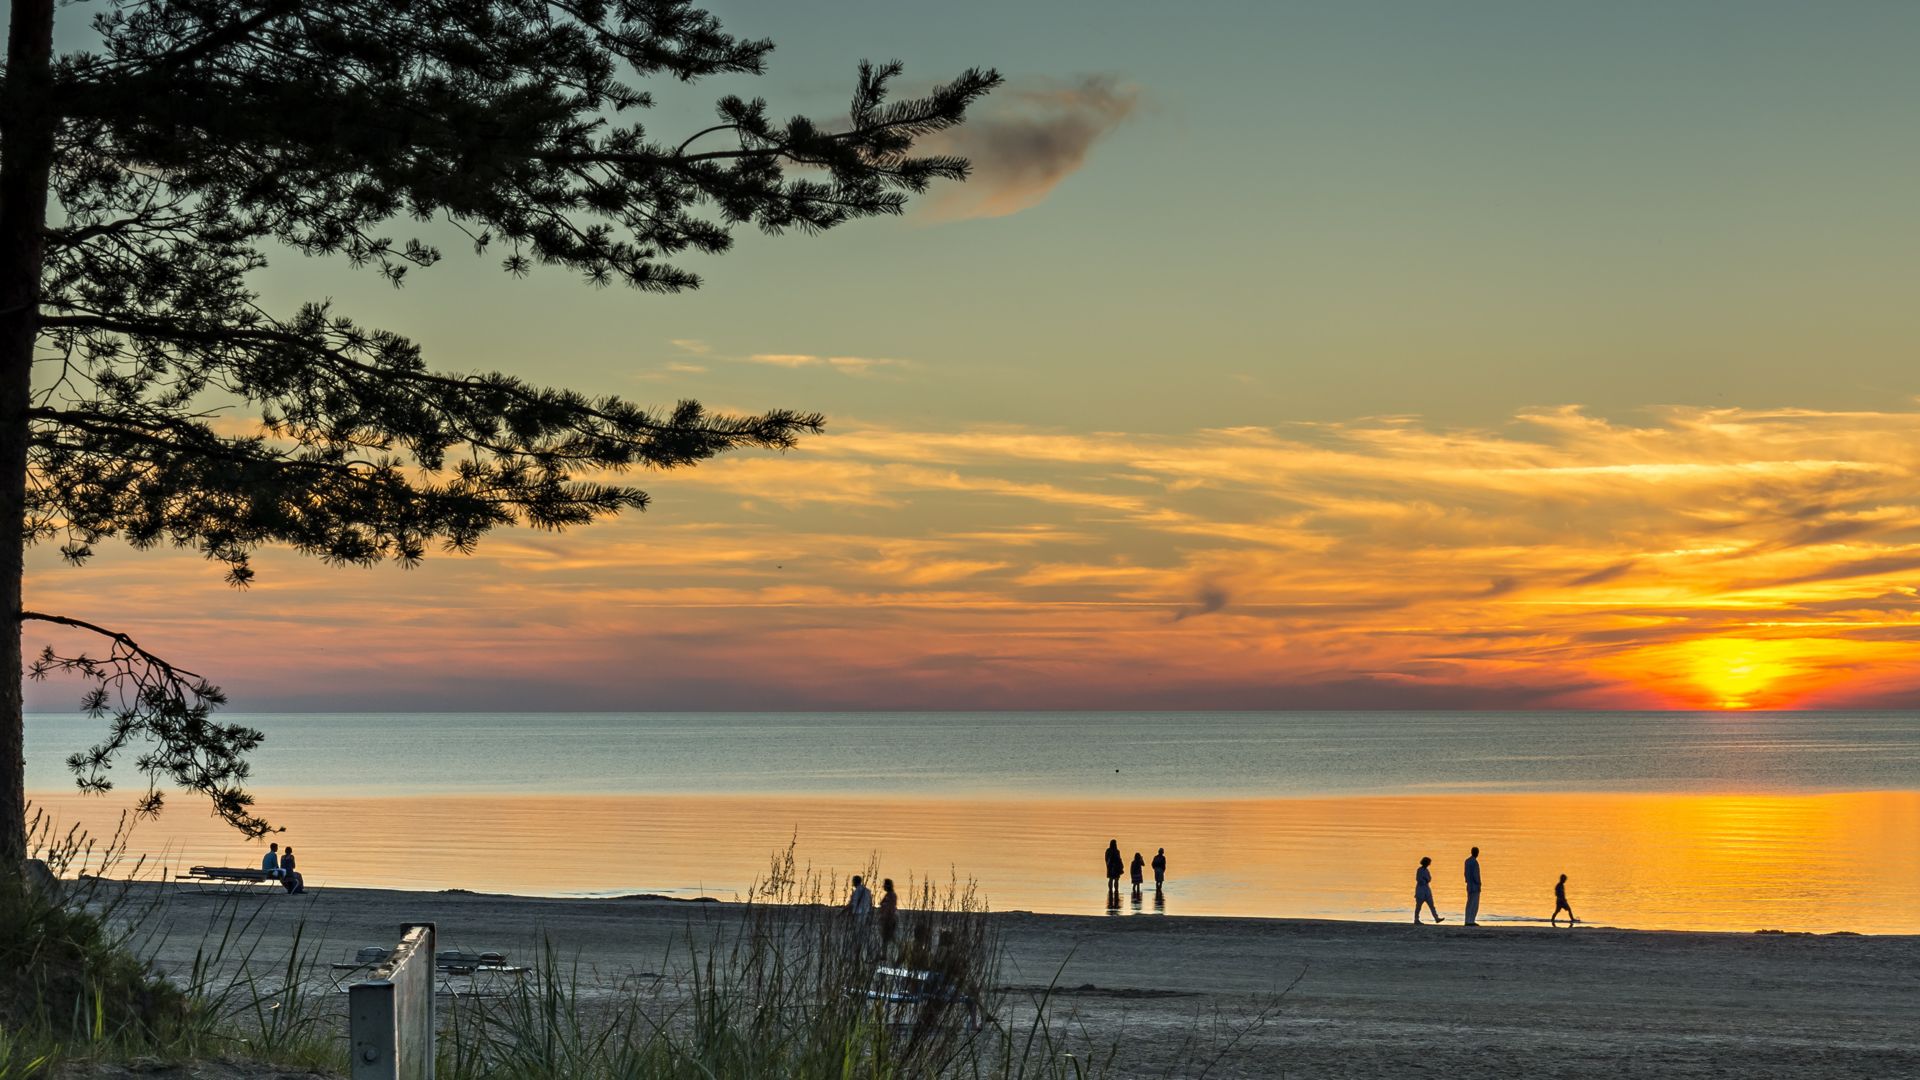 Kolorowy zachód słońca nad piaszczystą plażą w Jurmale – słynnym nadbałtyckim uzdrowisku na Łotwie